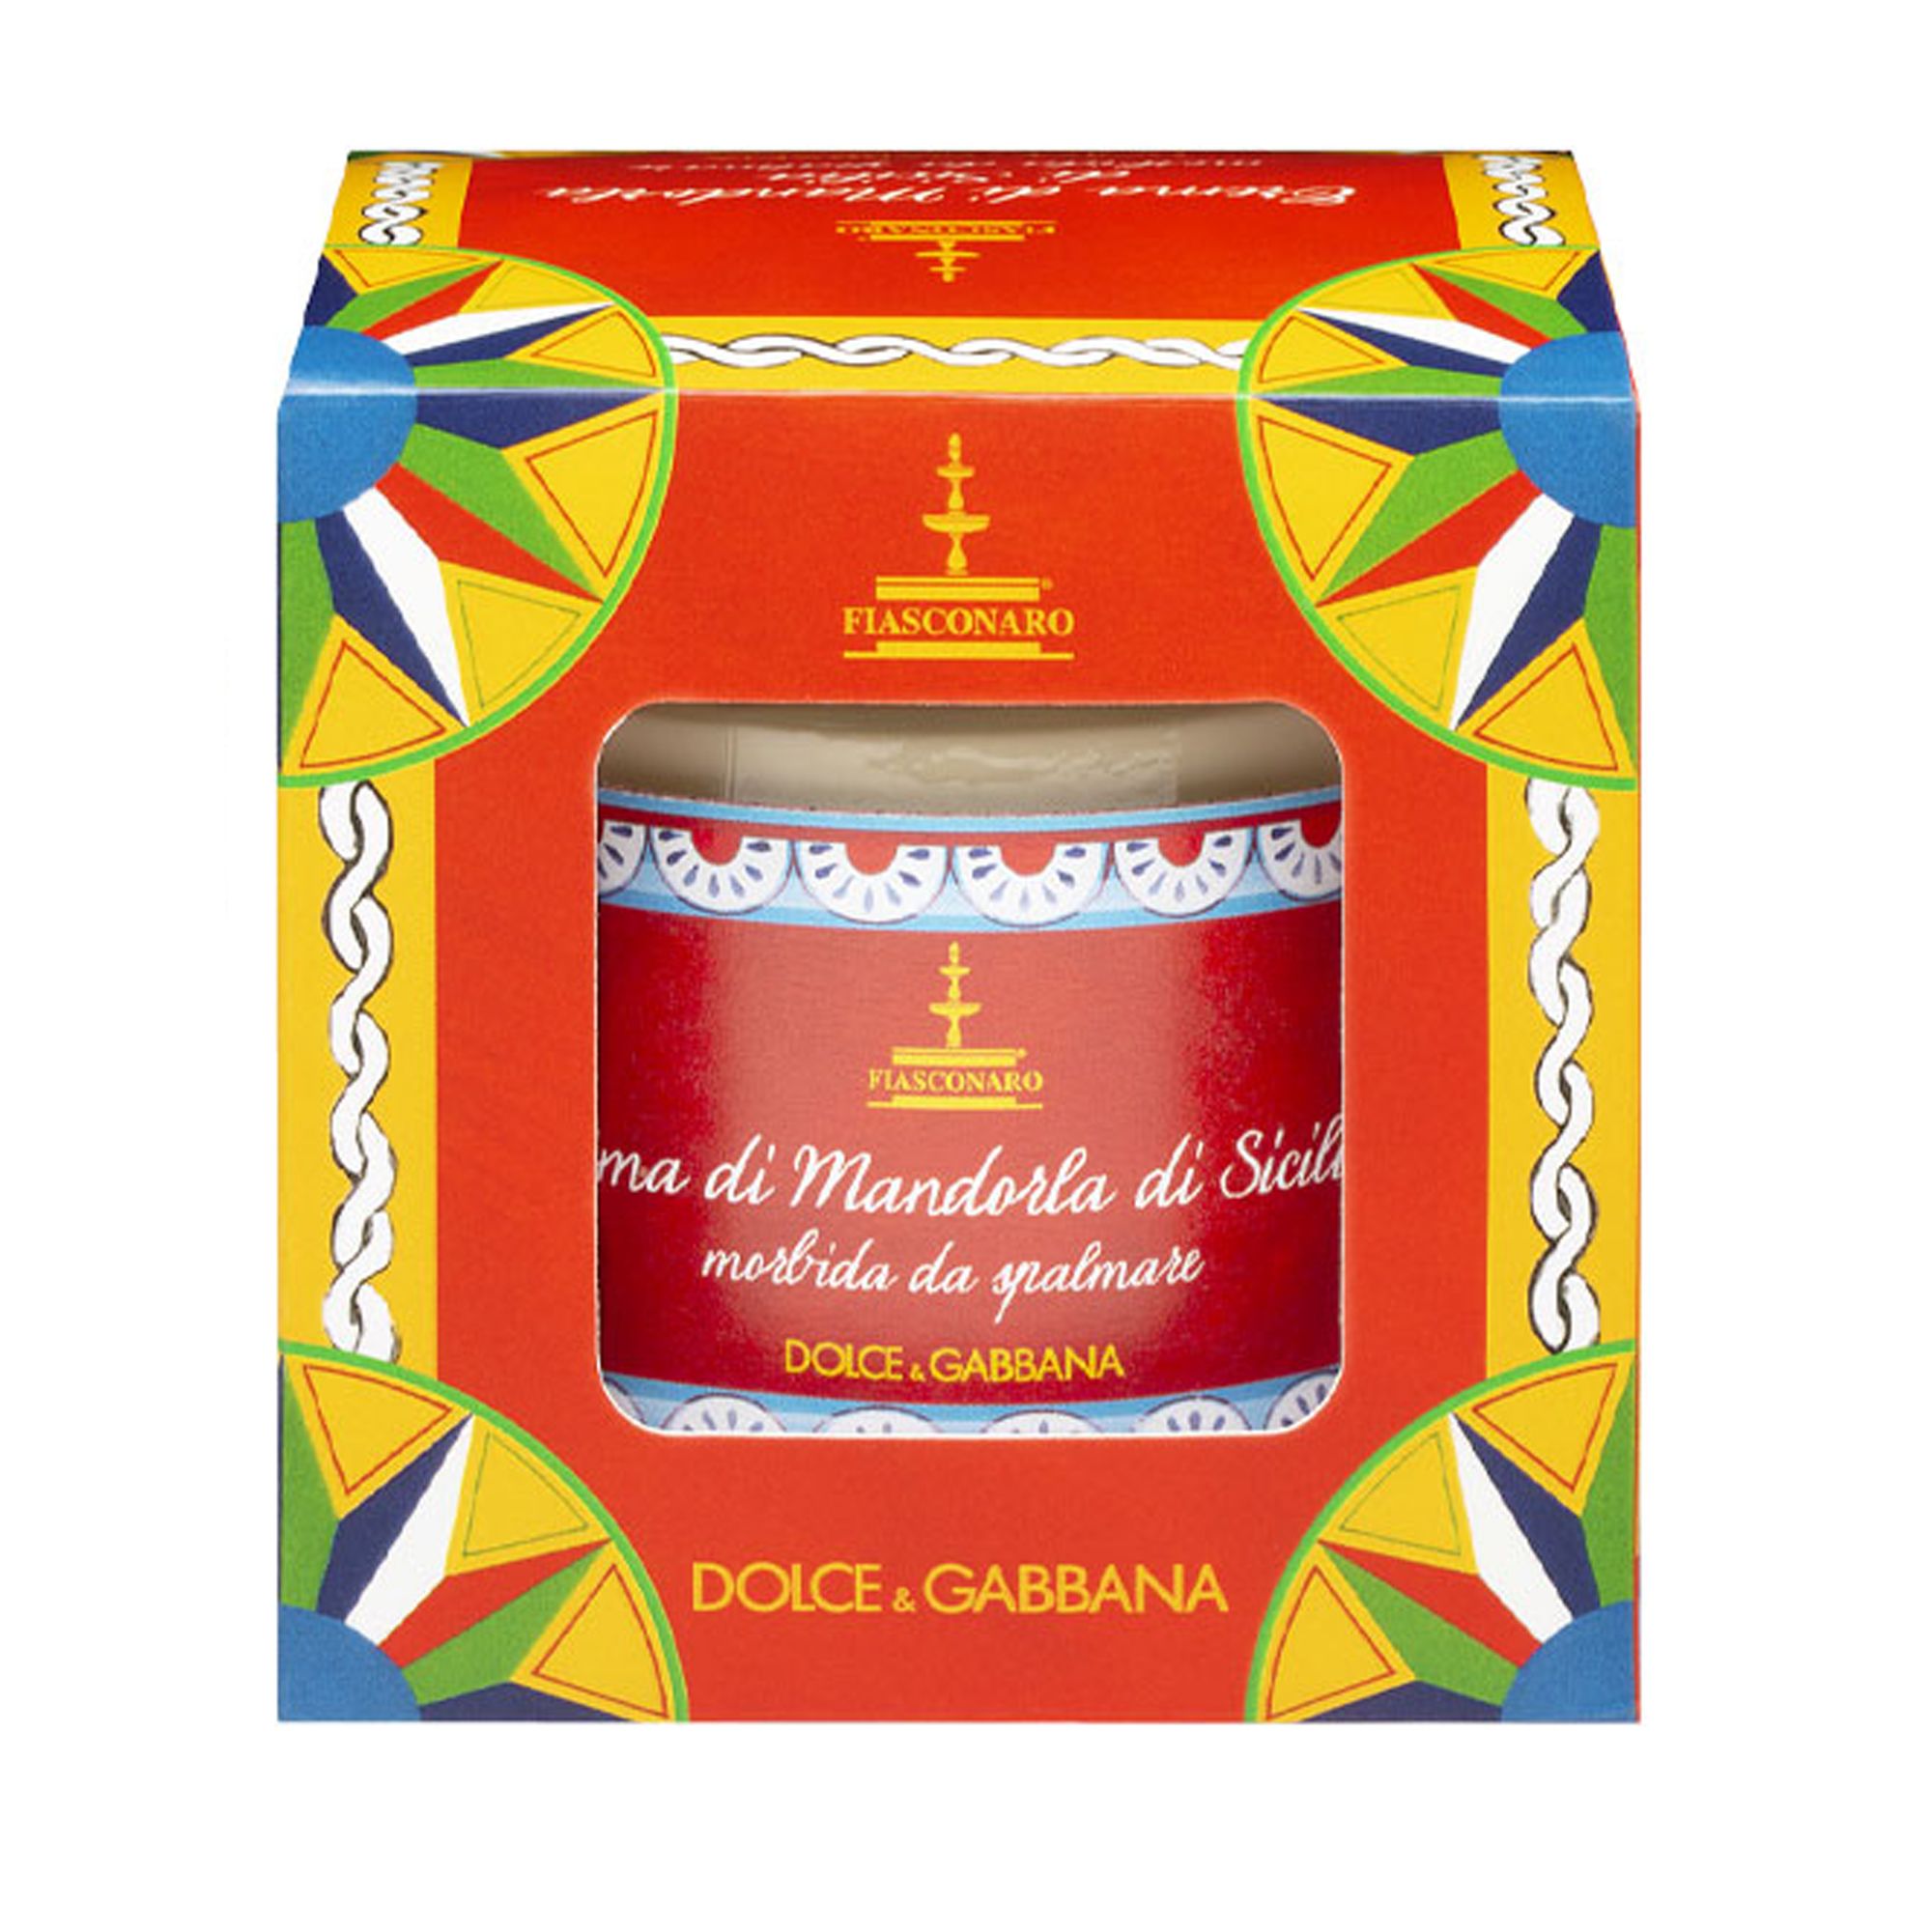 Fiasconaro Dolce and Gabbana Sicilian Almond Cream 200g